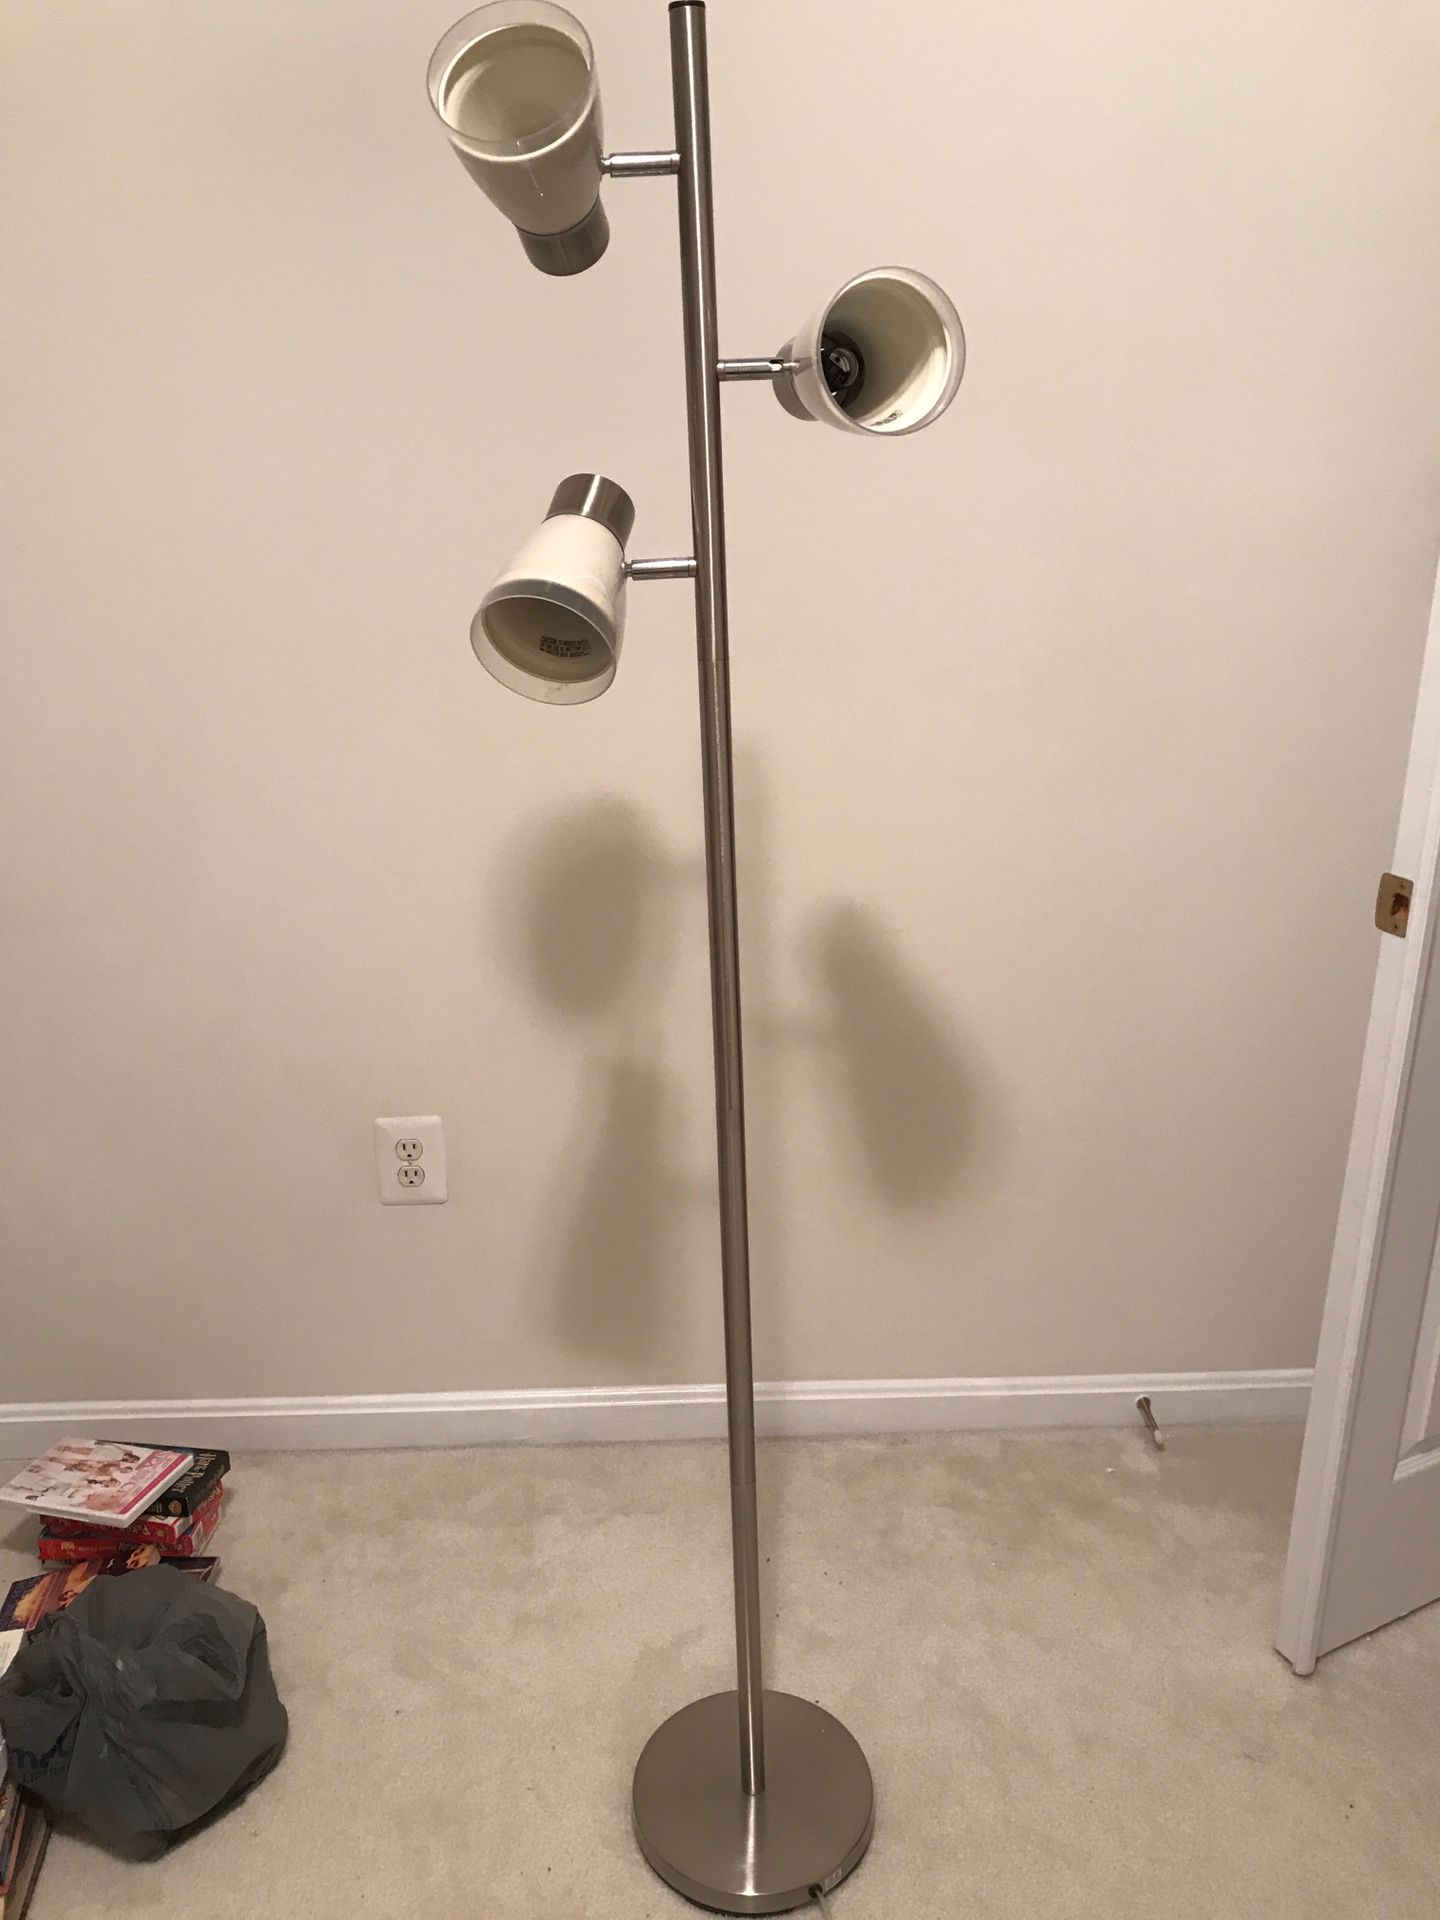 3-Light Floor Lamp